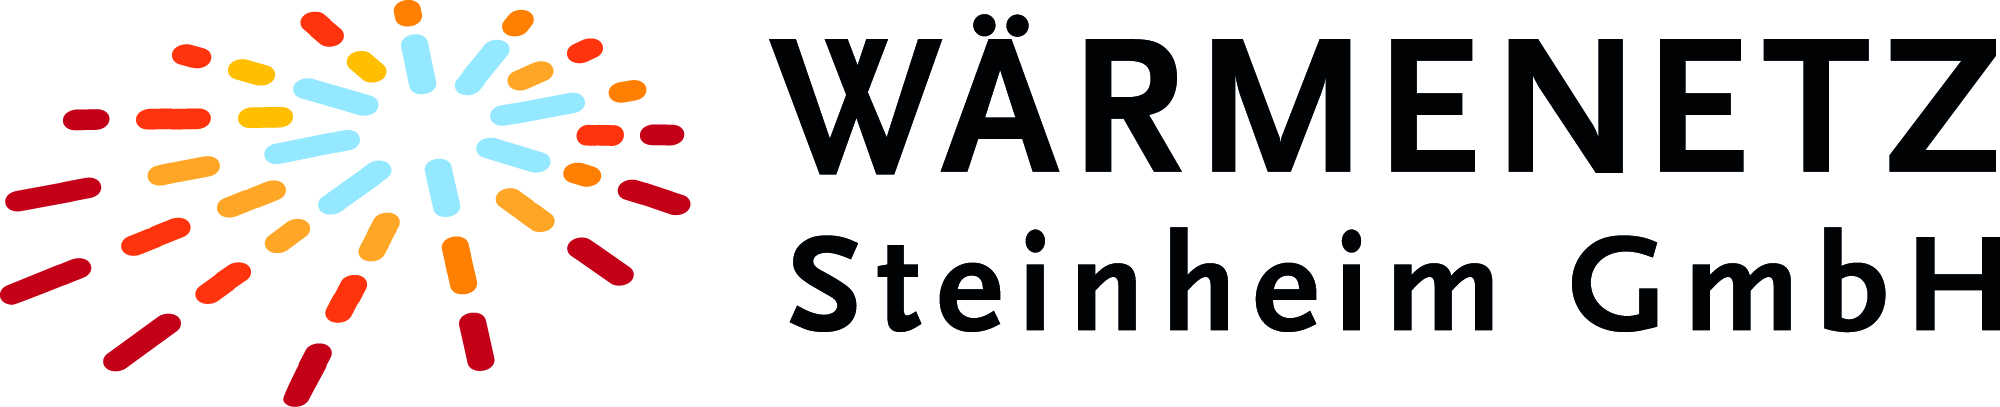 Wärmenetz Steinheim GmbH Logo